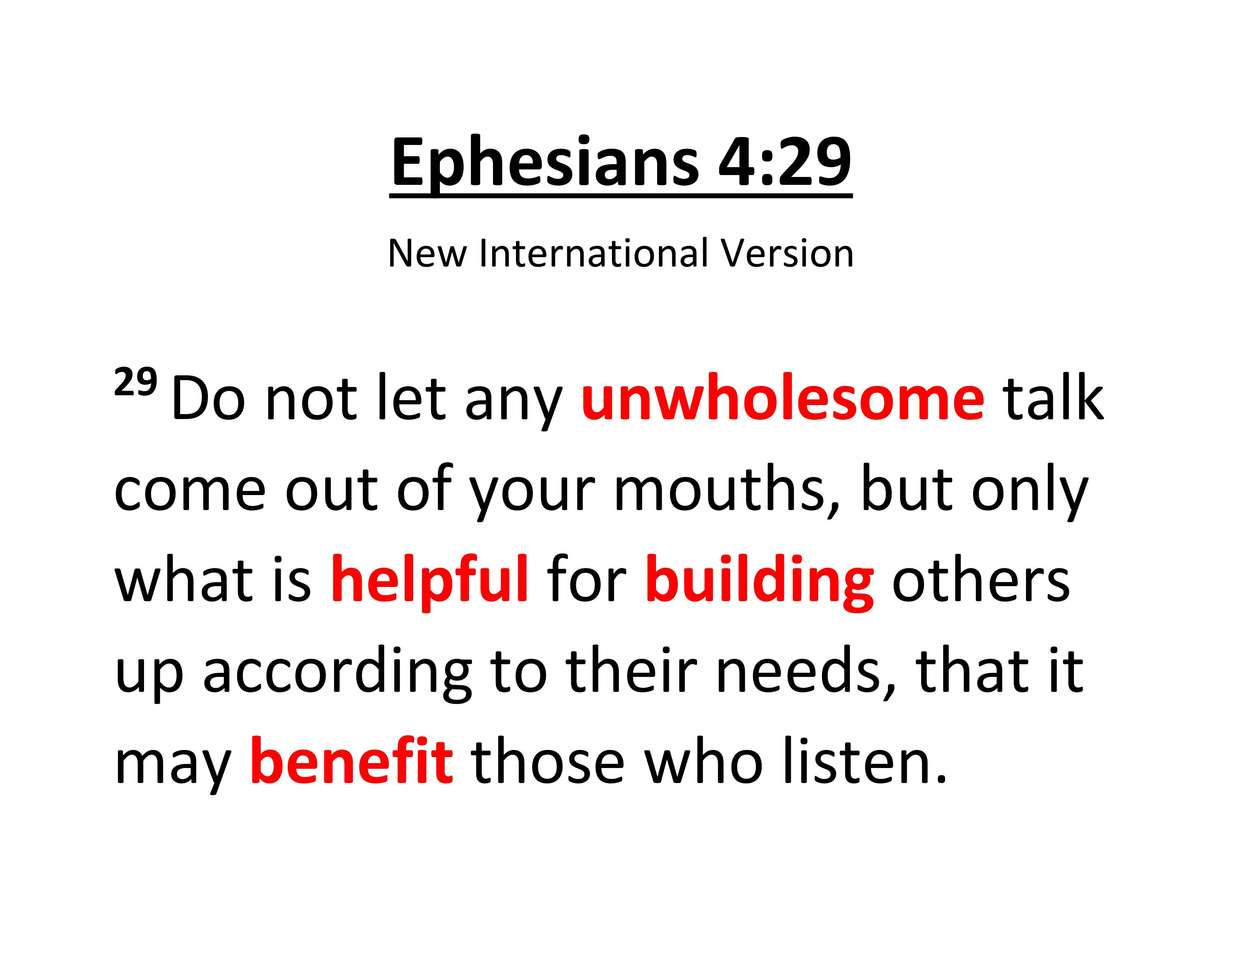 Ефесянам 4:29 пазл онлайн из фото